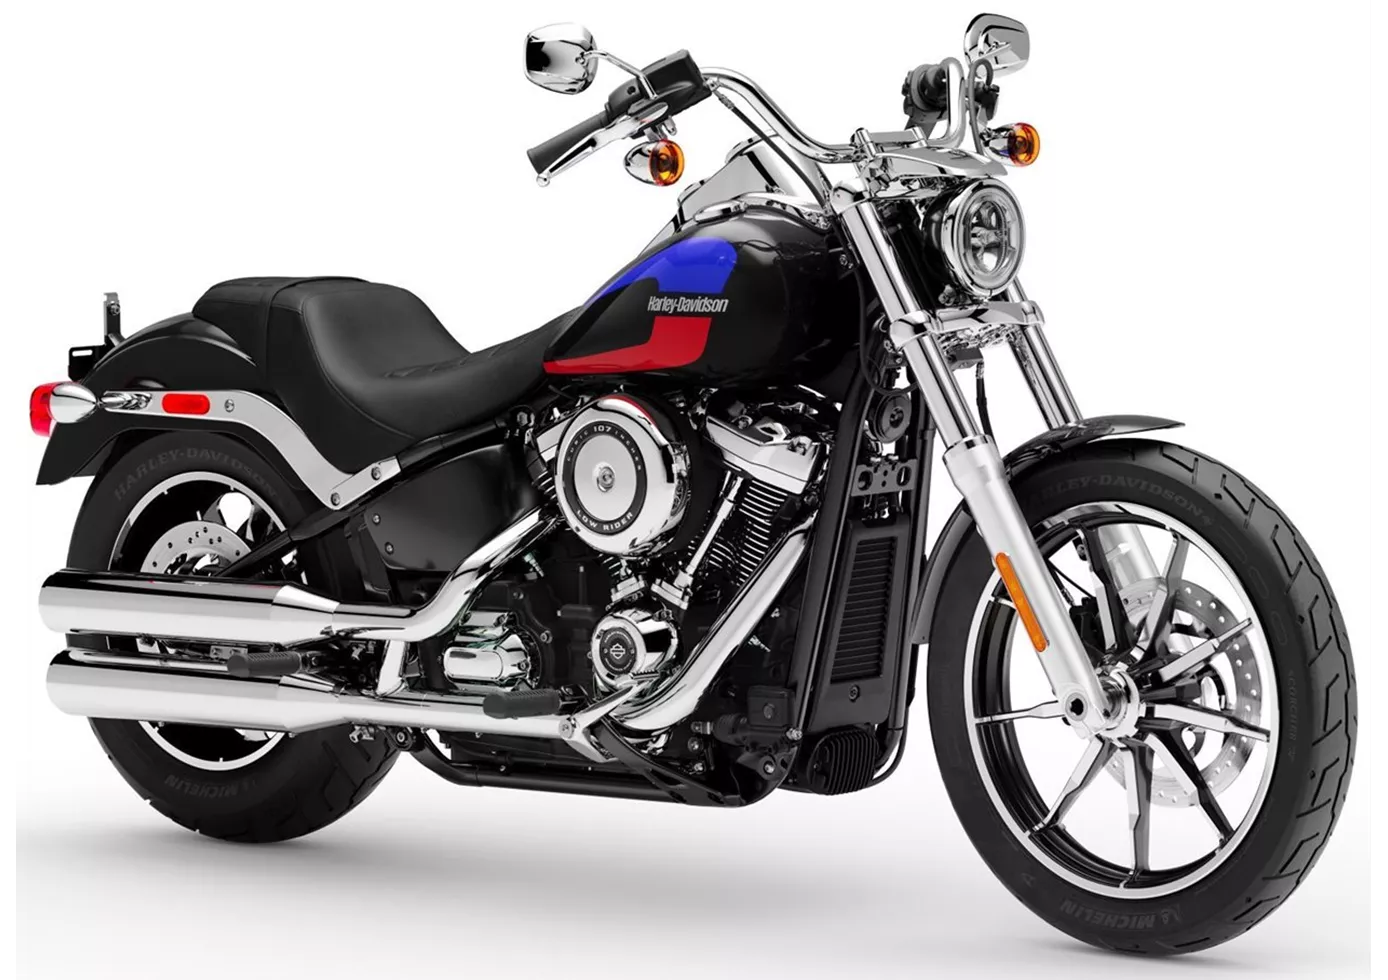 Harley-Davidson Softail Low Rider FXLR 2020